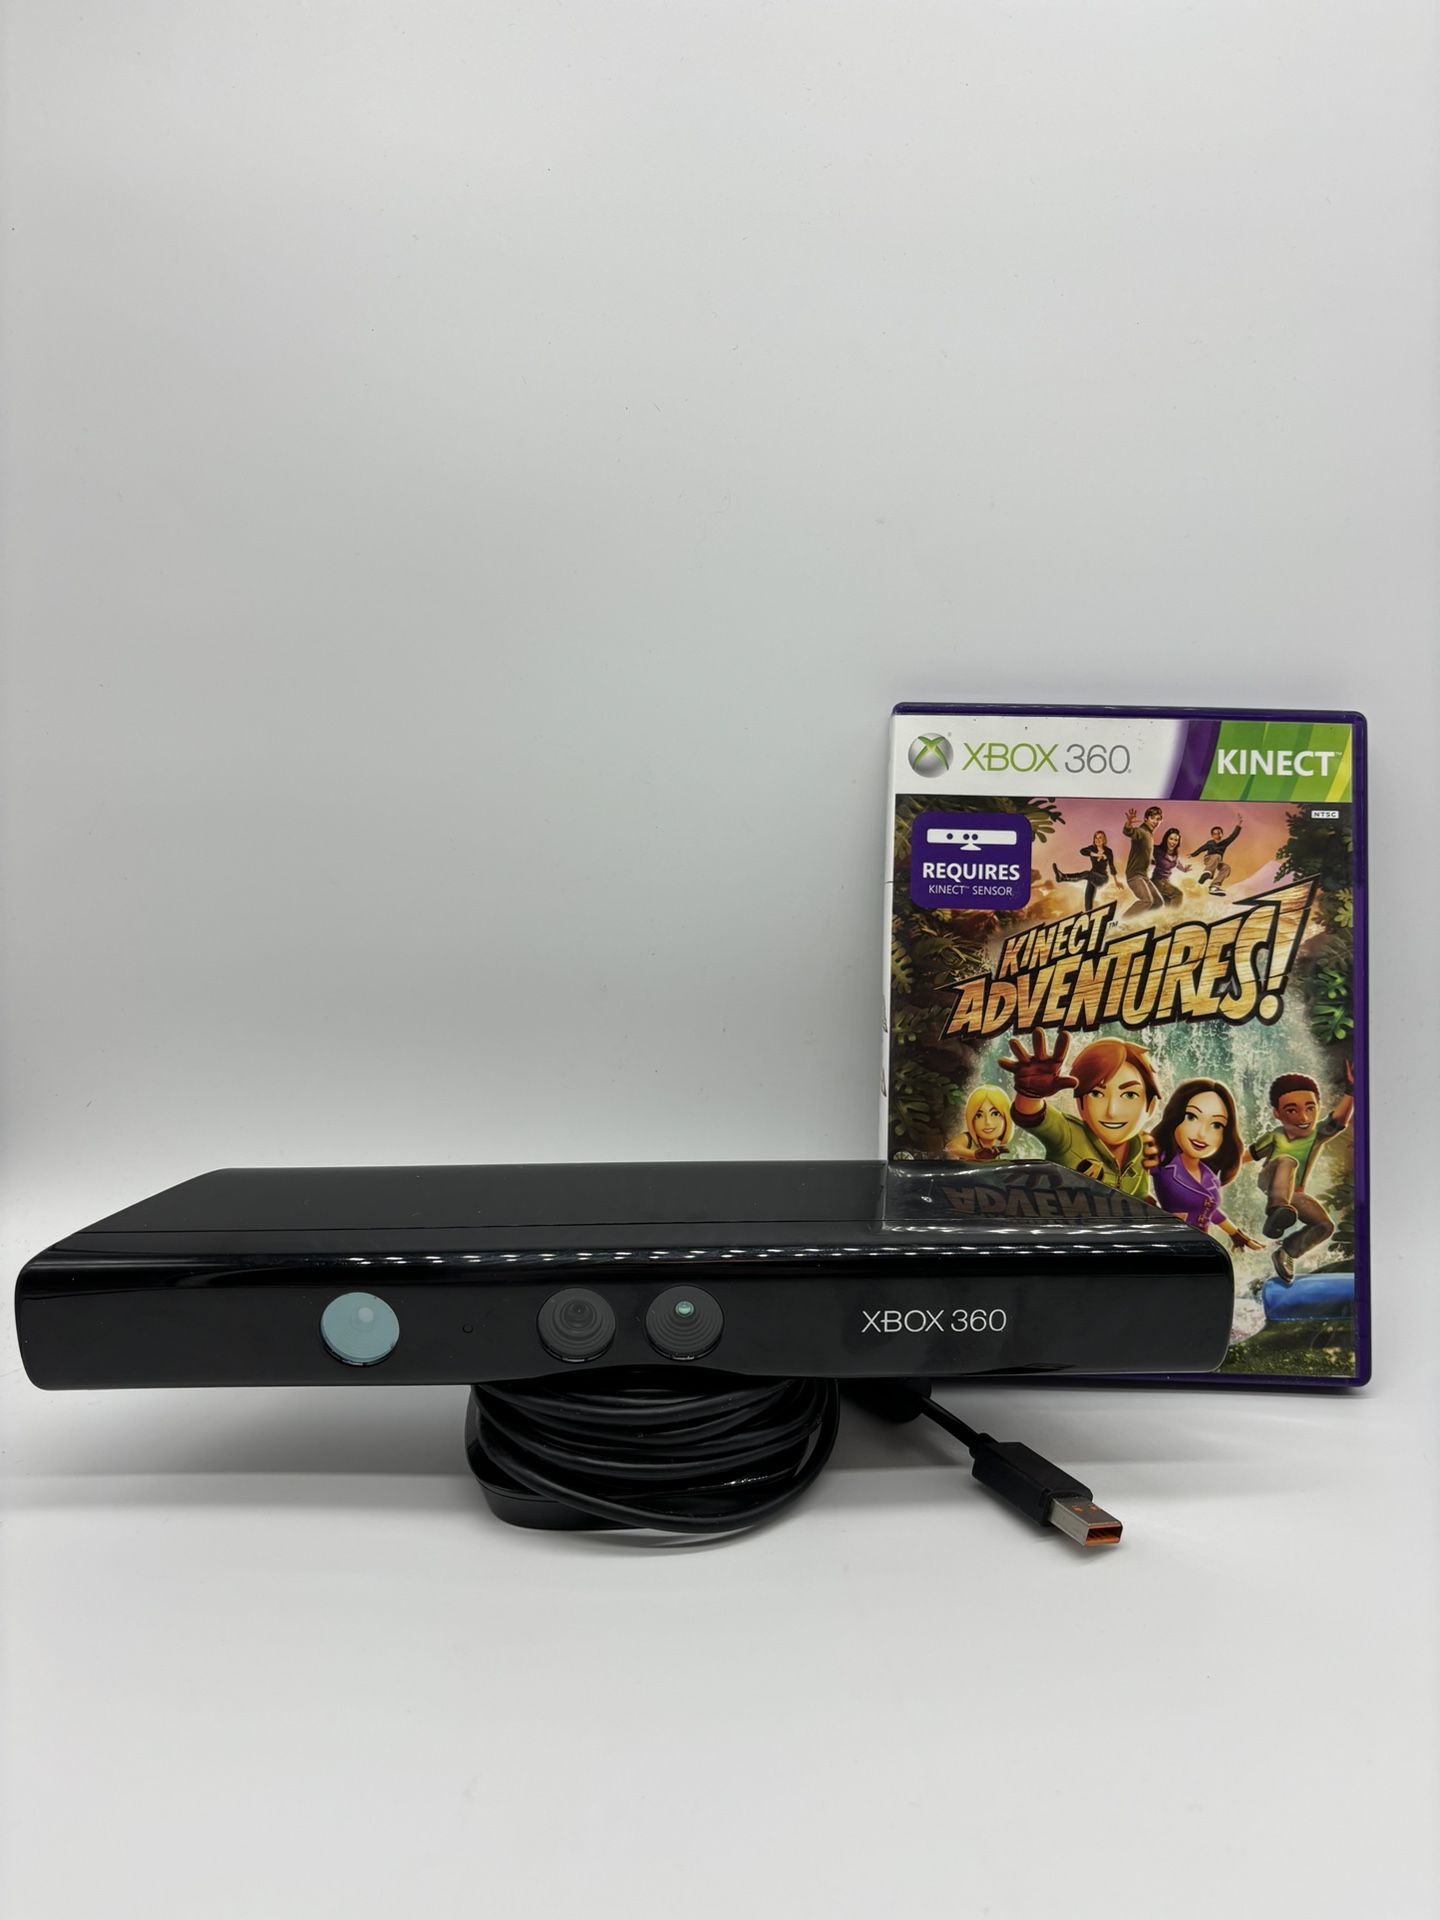 Microsoft Xbox 360 Kinect Black Sensor Bar Model 1414 And Kinect Adventure Game